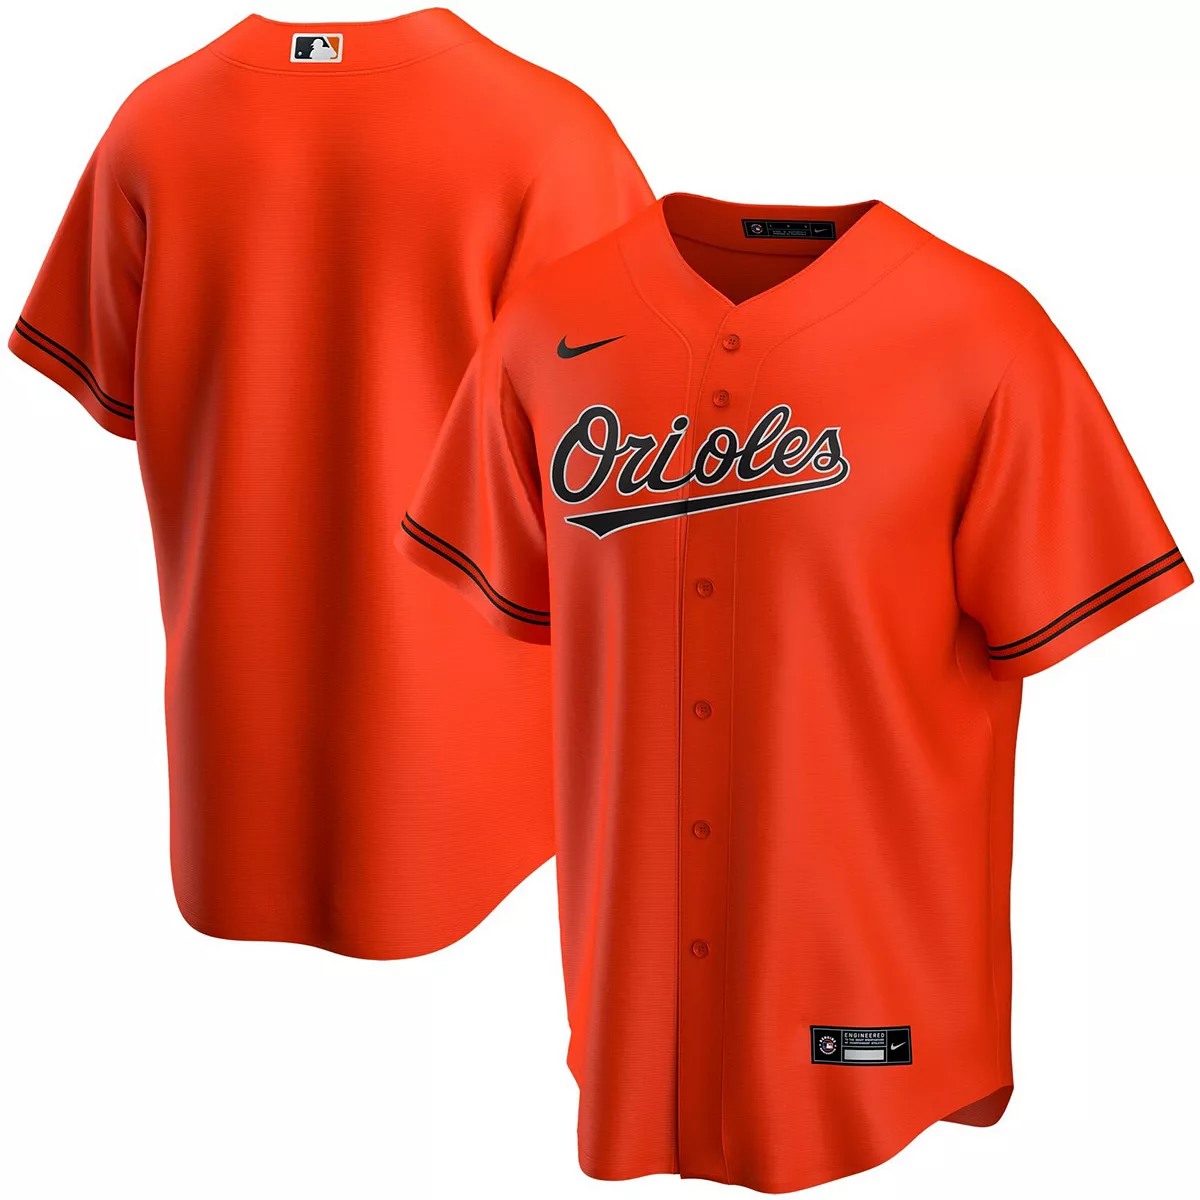 Baltimore Orioles Lilo & Stitch Jersey - Orange